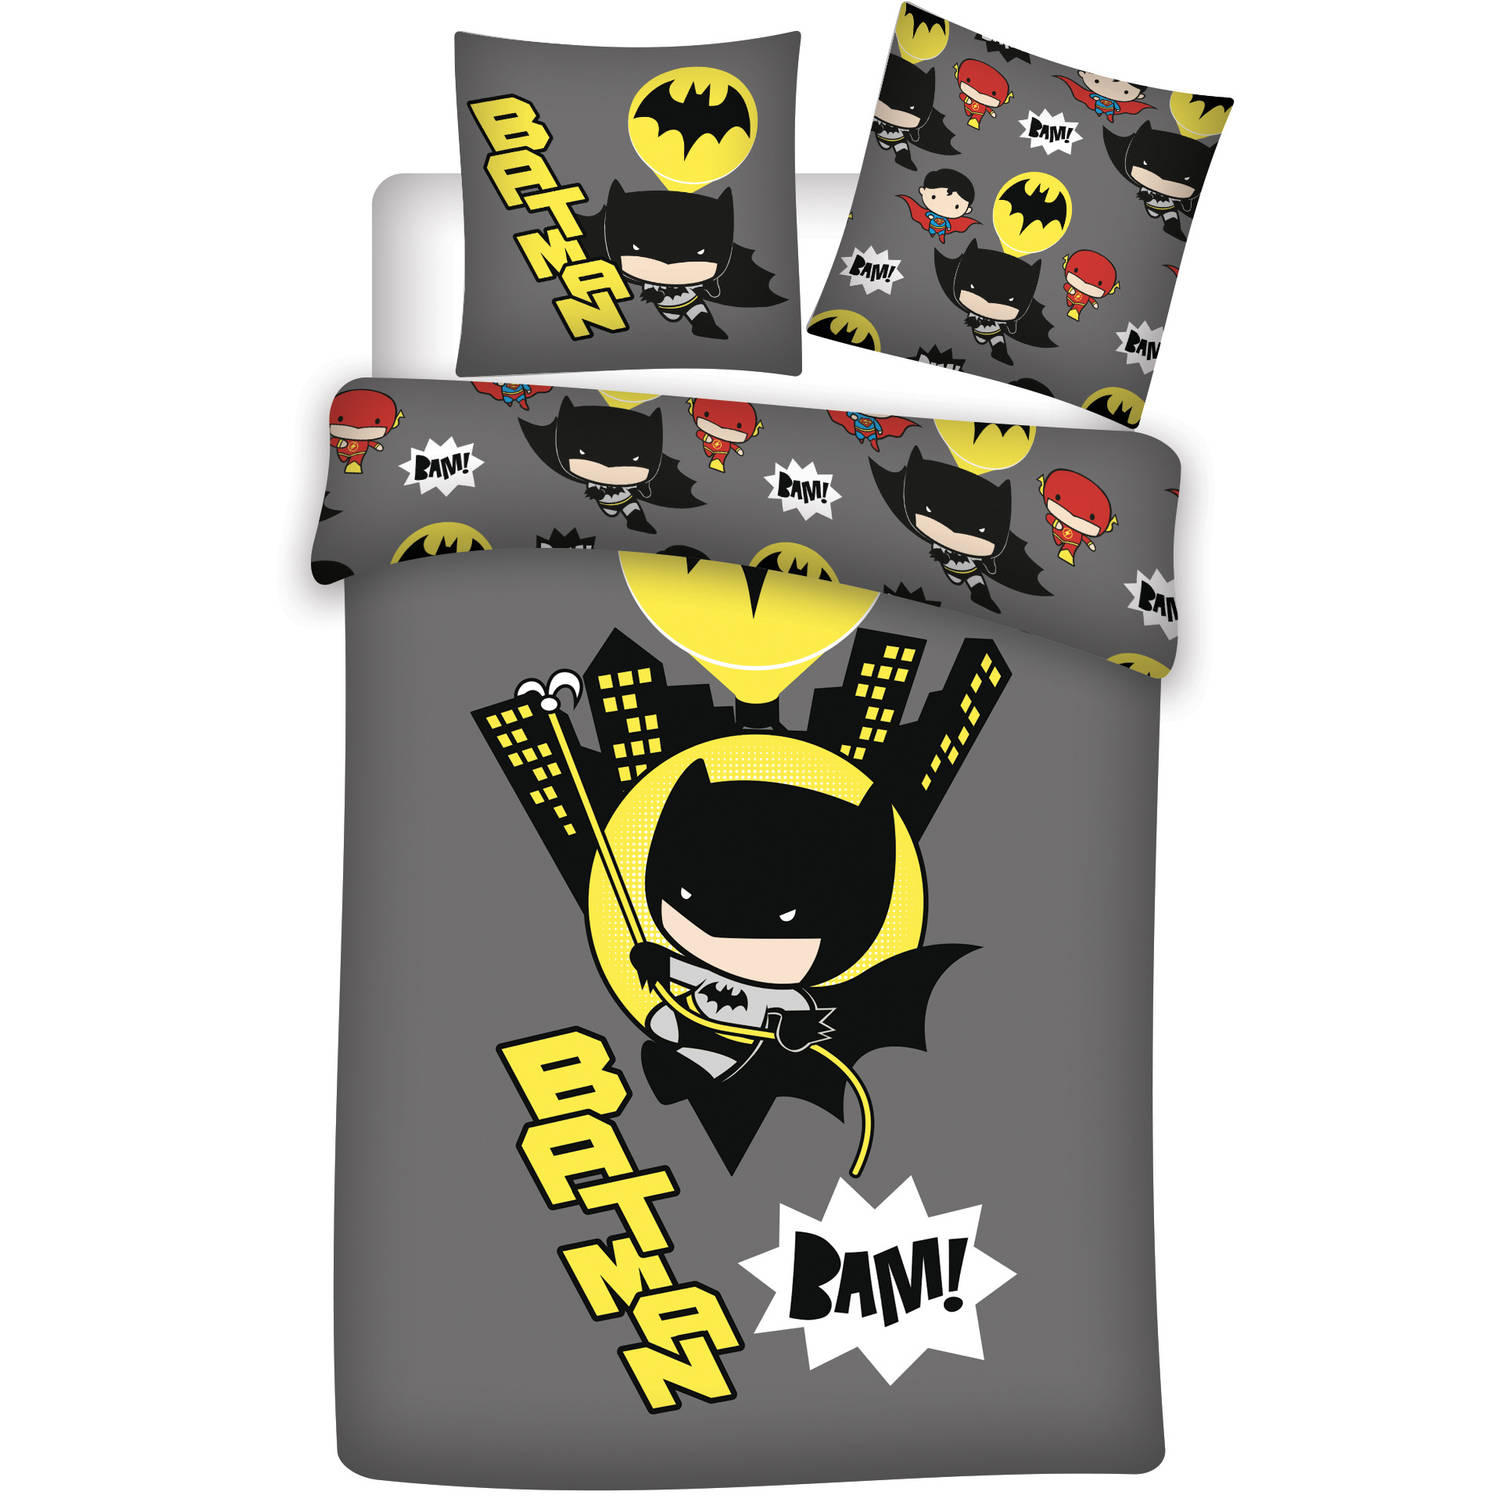 Batman Dekbedovertrek BAM! - Eenpersoons - 140 x 200 cm - Polyester